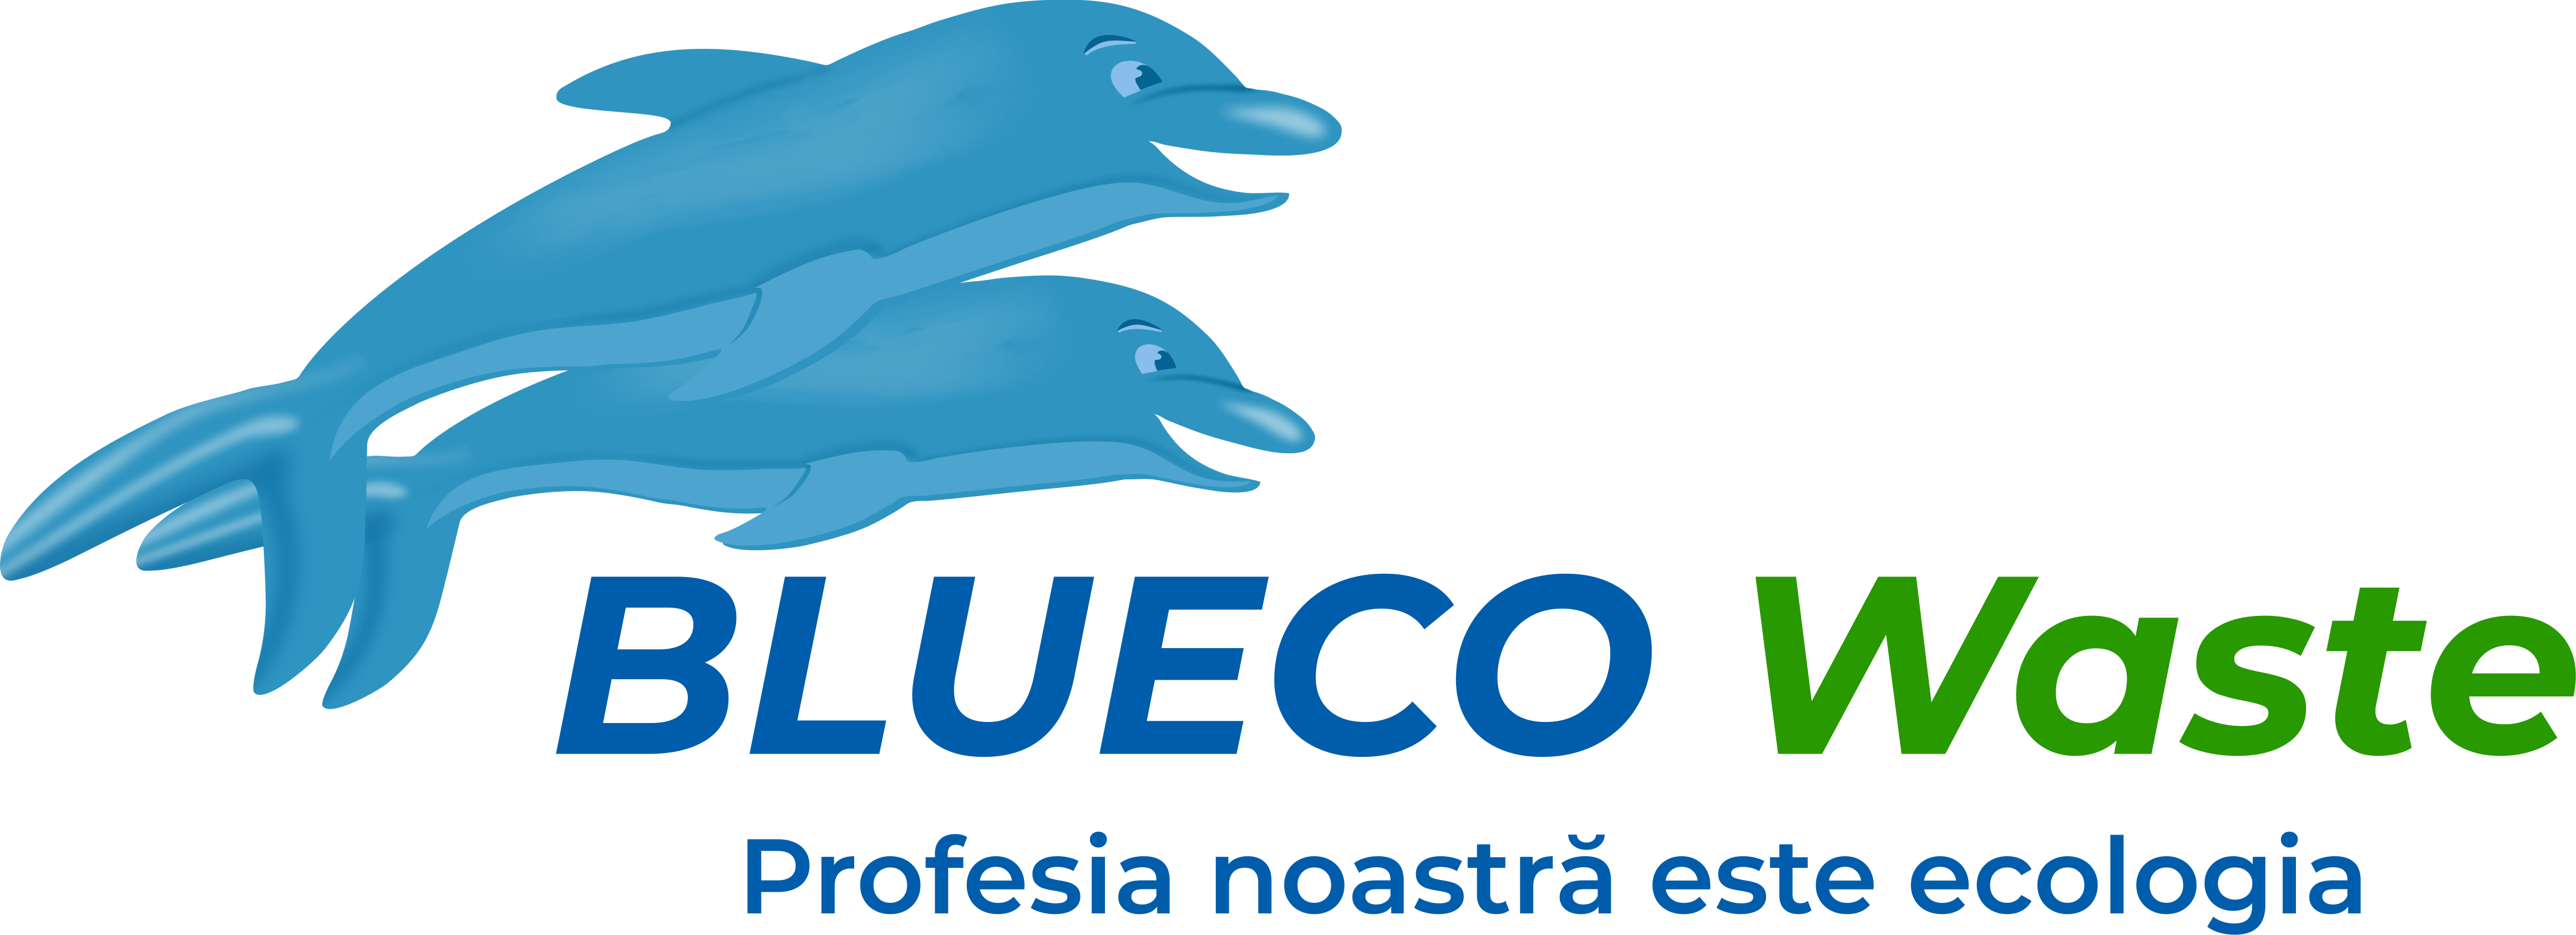 Blueco Waste - VIDANJĂRI MENTENANŢĂ VIDEOINSPECŢIE